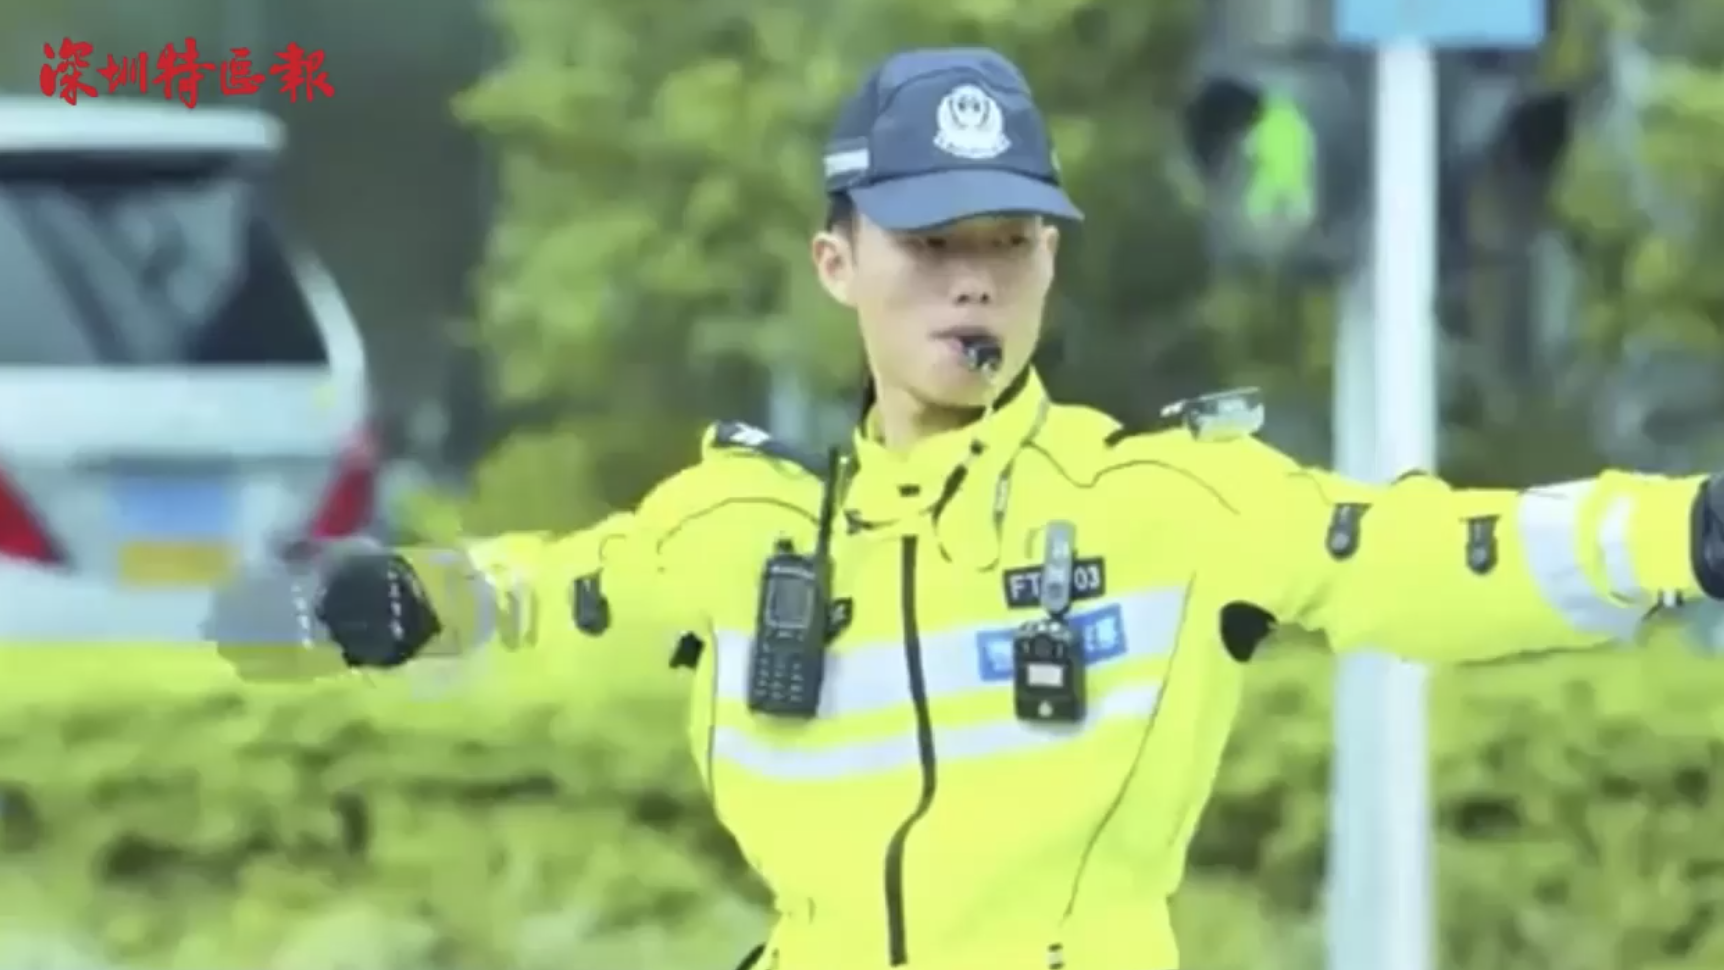 新闻路上说说说｜你如何评价自带风扇的深圳交警新制服？